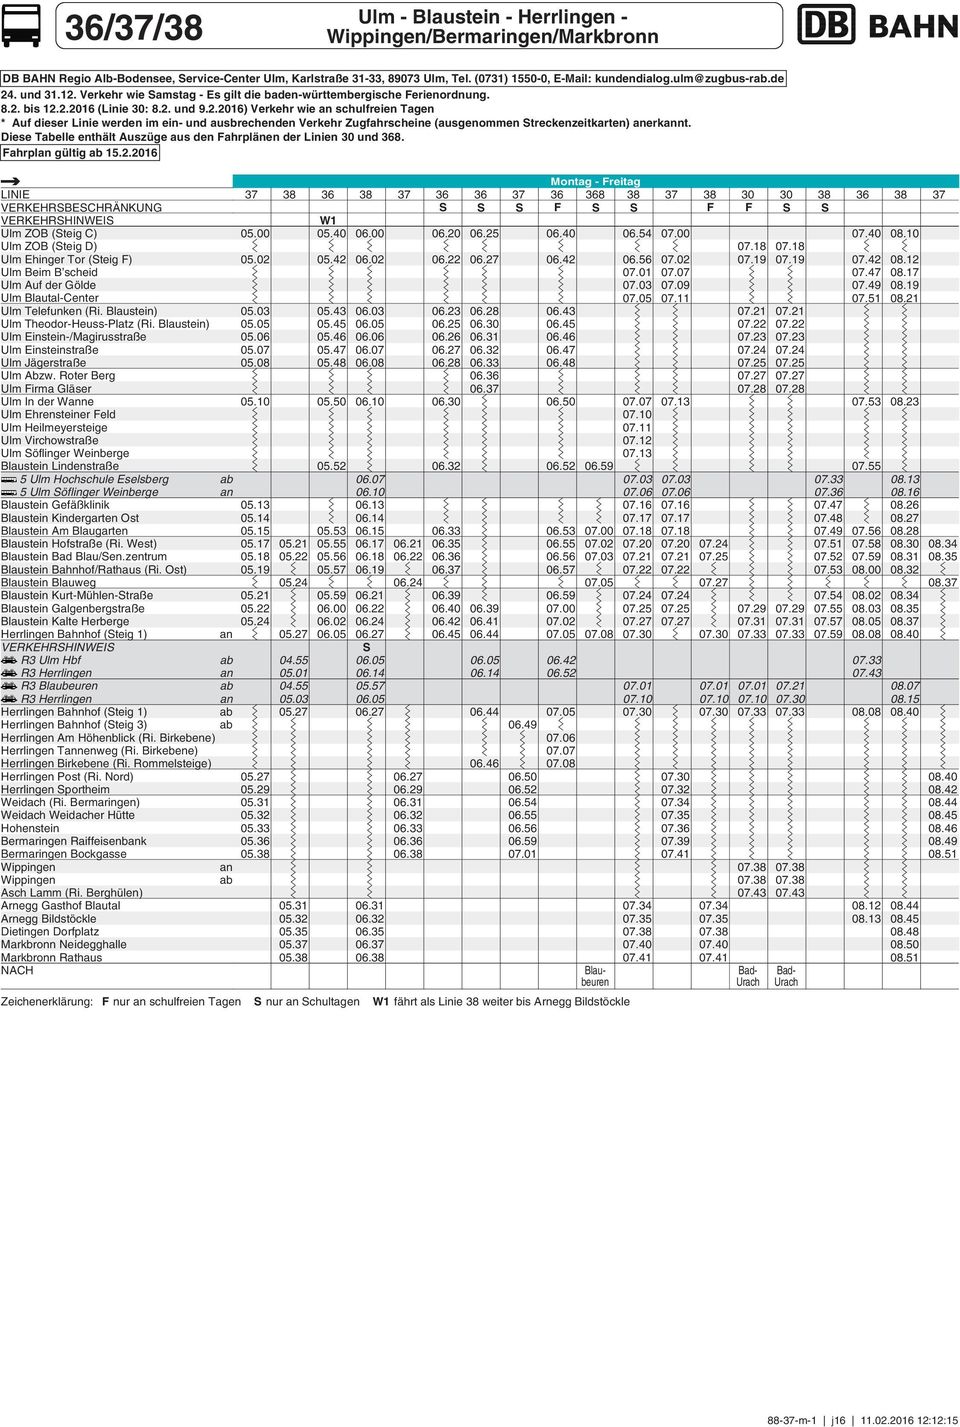 Diese Tabelle enthält Auszüge aus den ahrplänen der Linien und 8. ahrplan gültig ab 15.2.